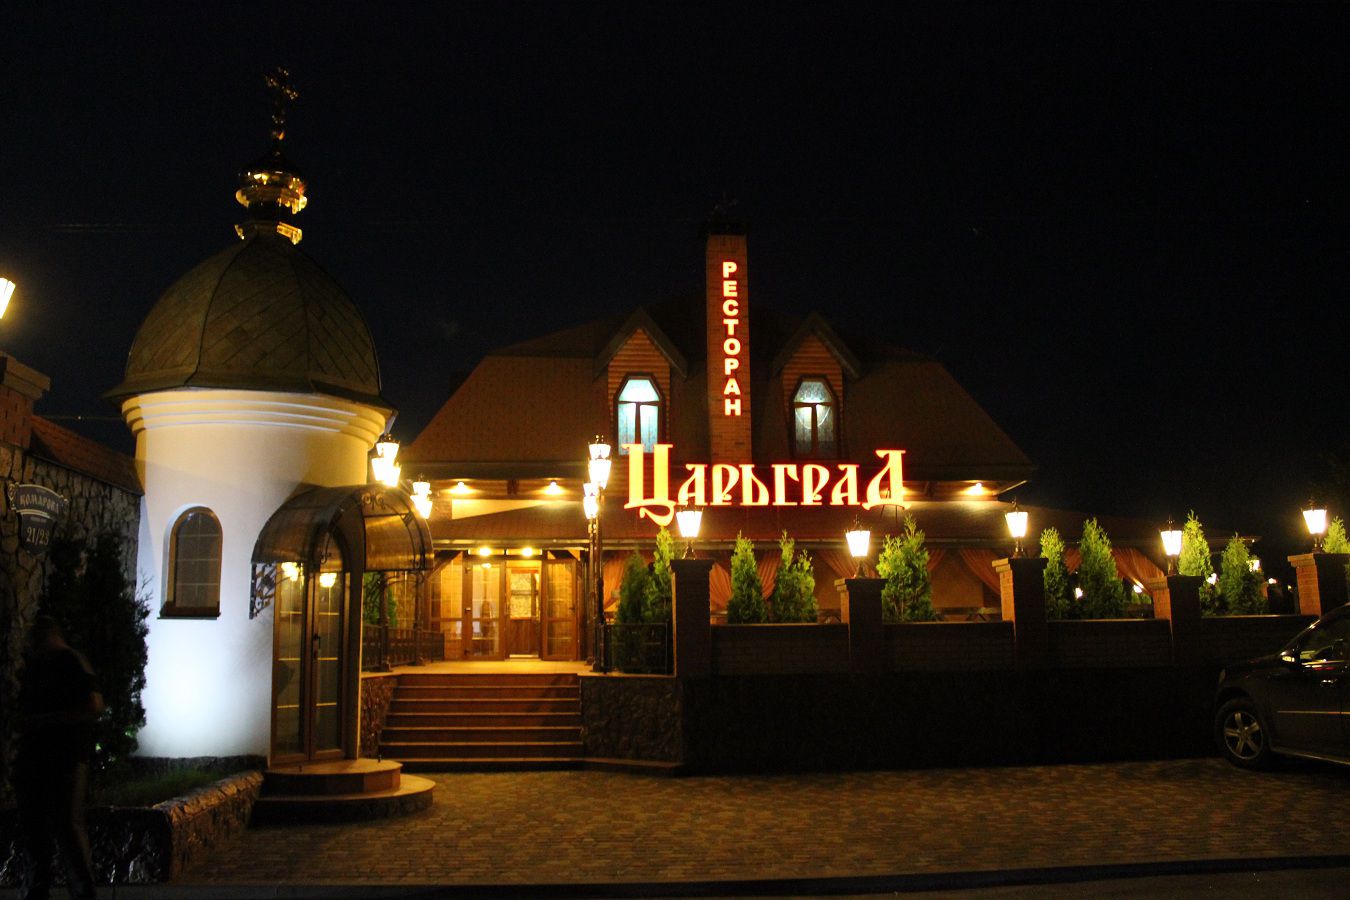 Tsytadel (former Tsargrad) | Hotel-restaurant complex